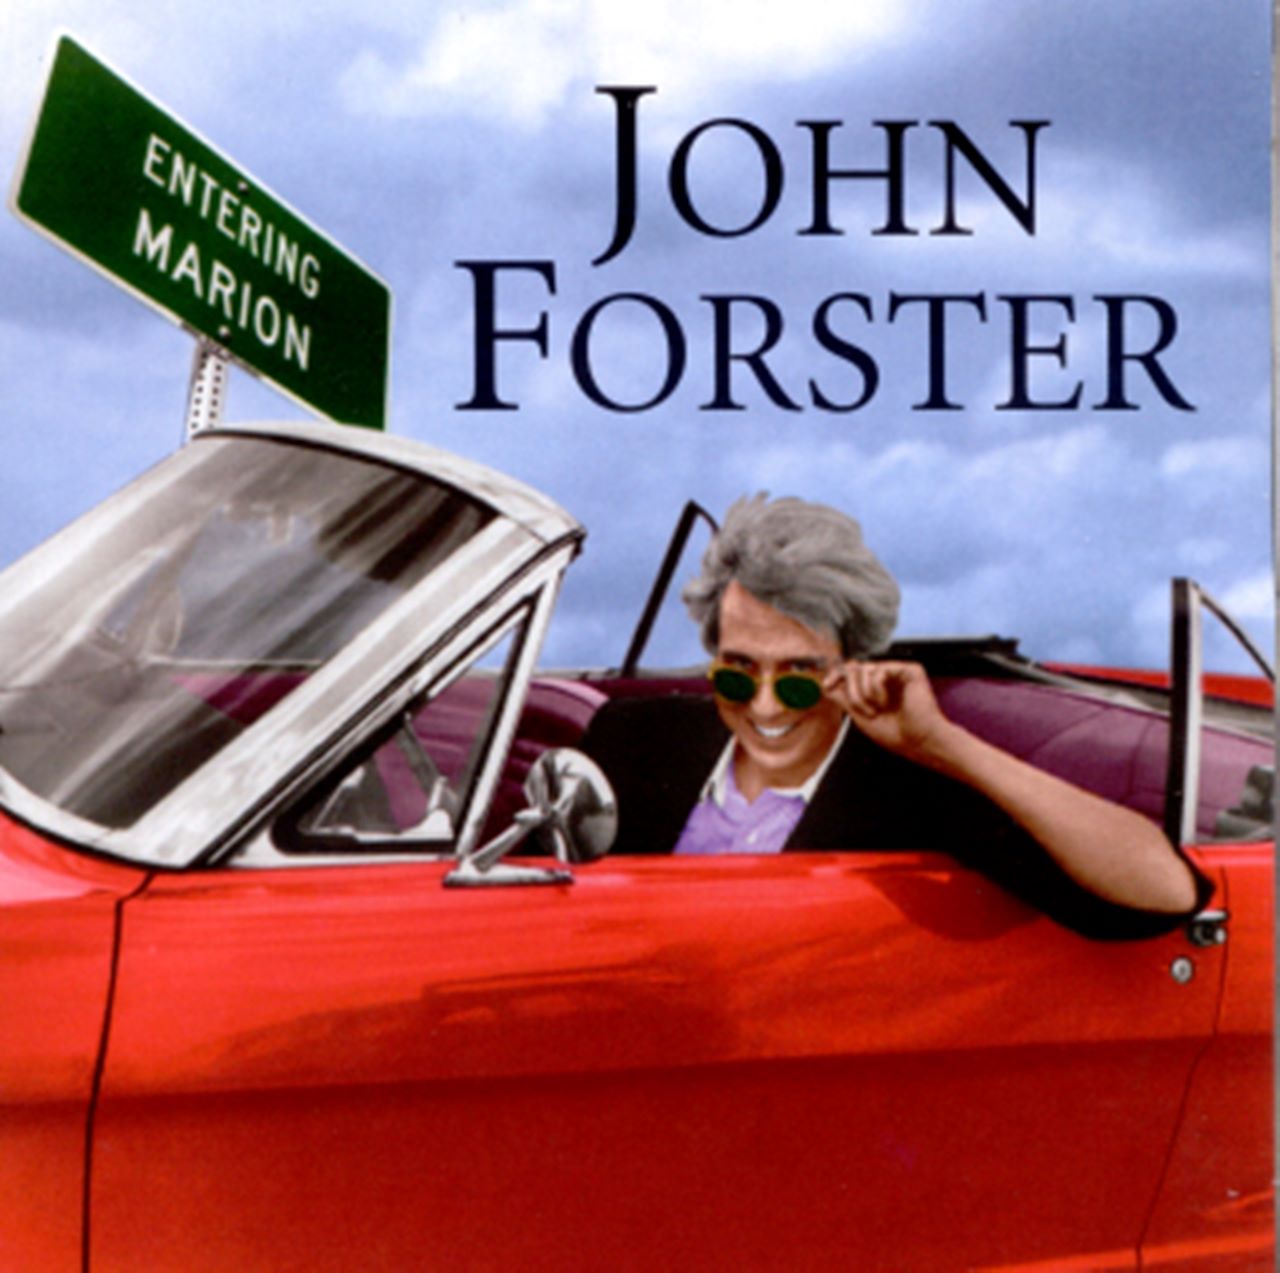 John Forster - Entering Marion cover album